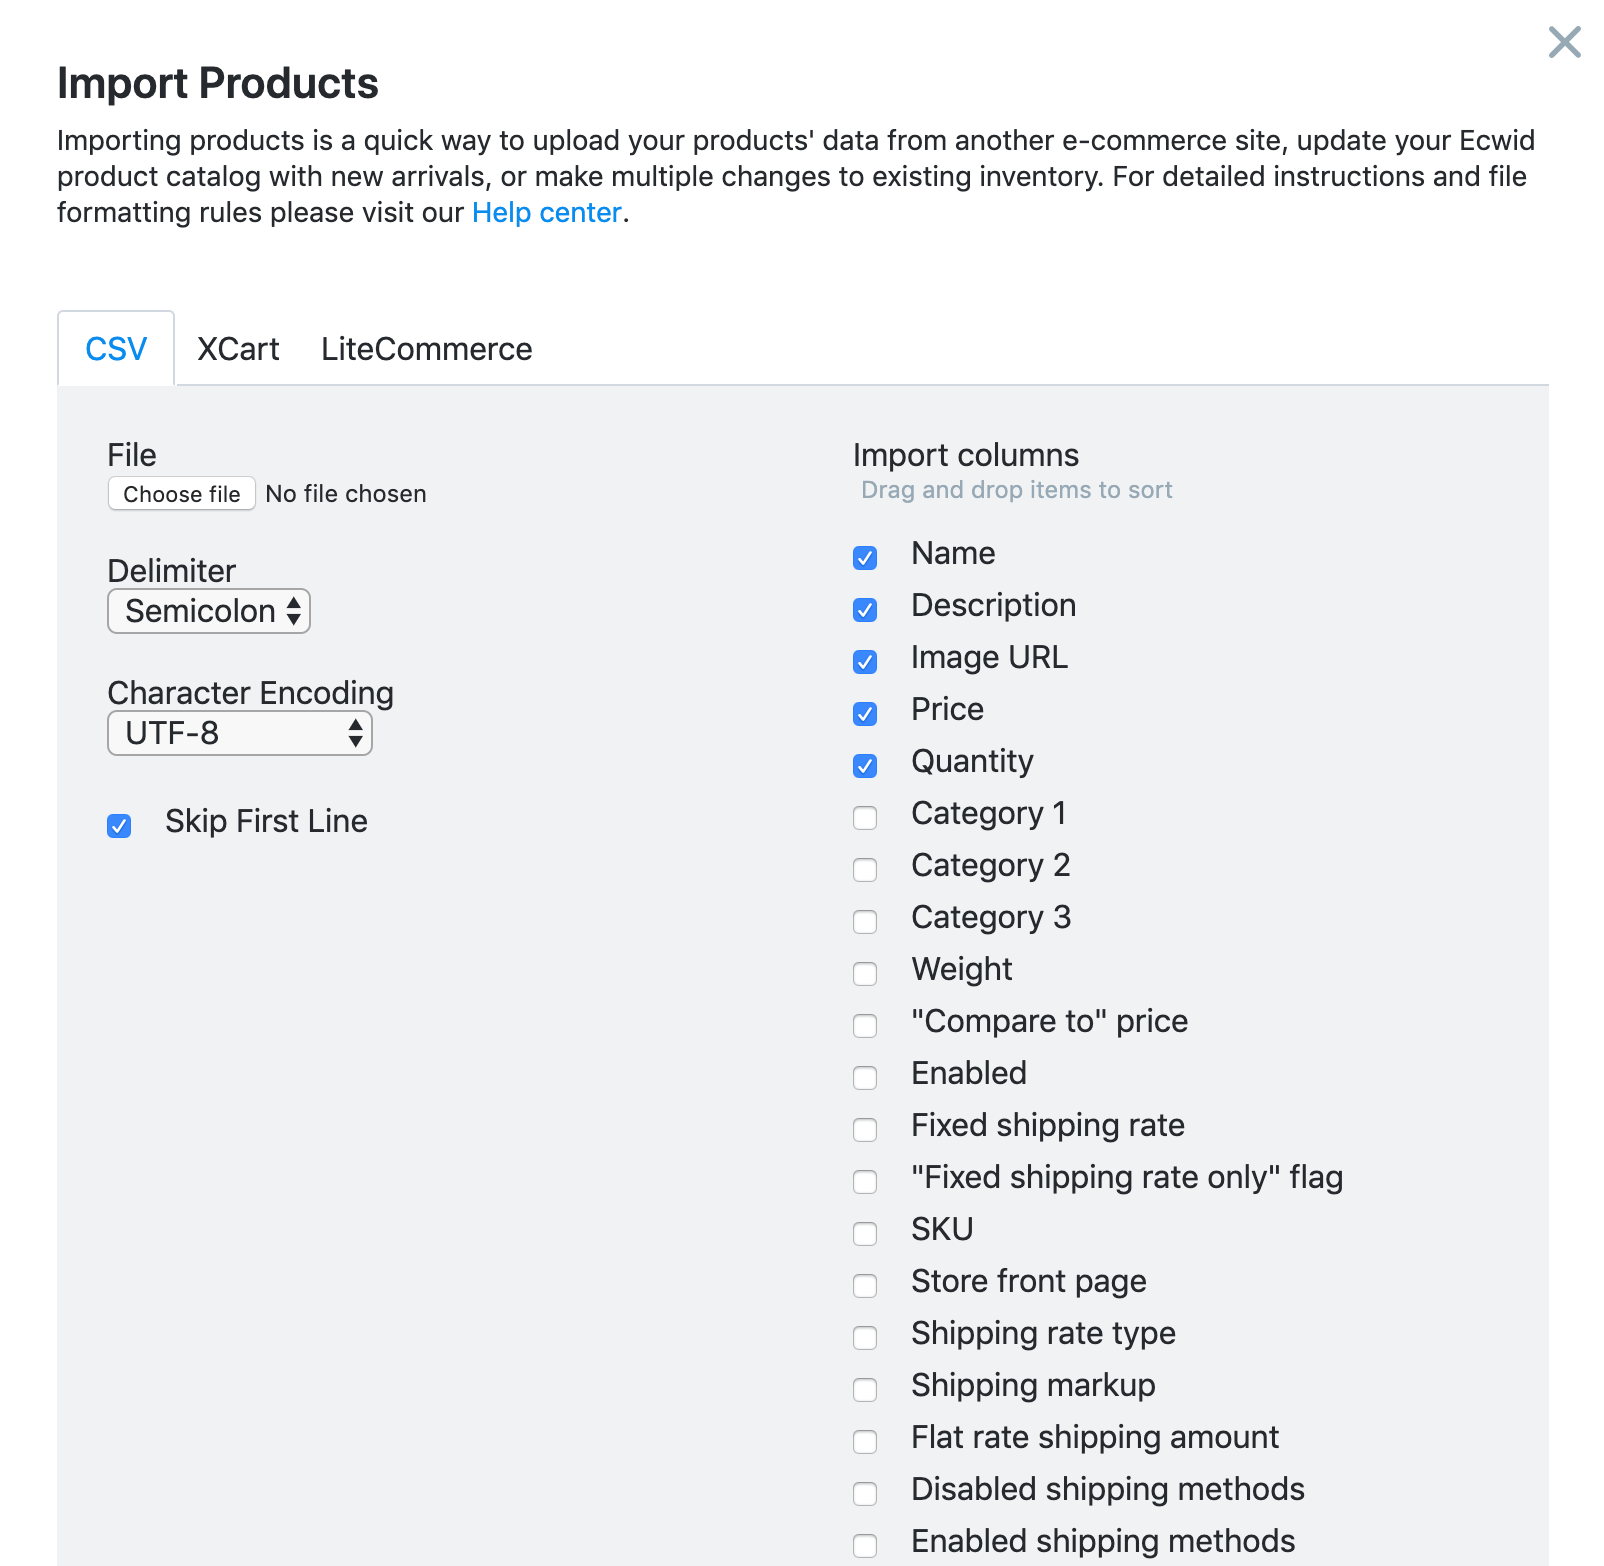 import settings